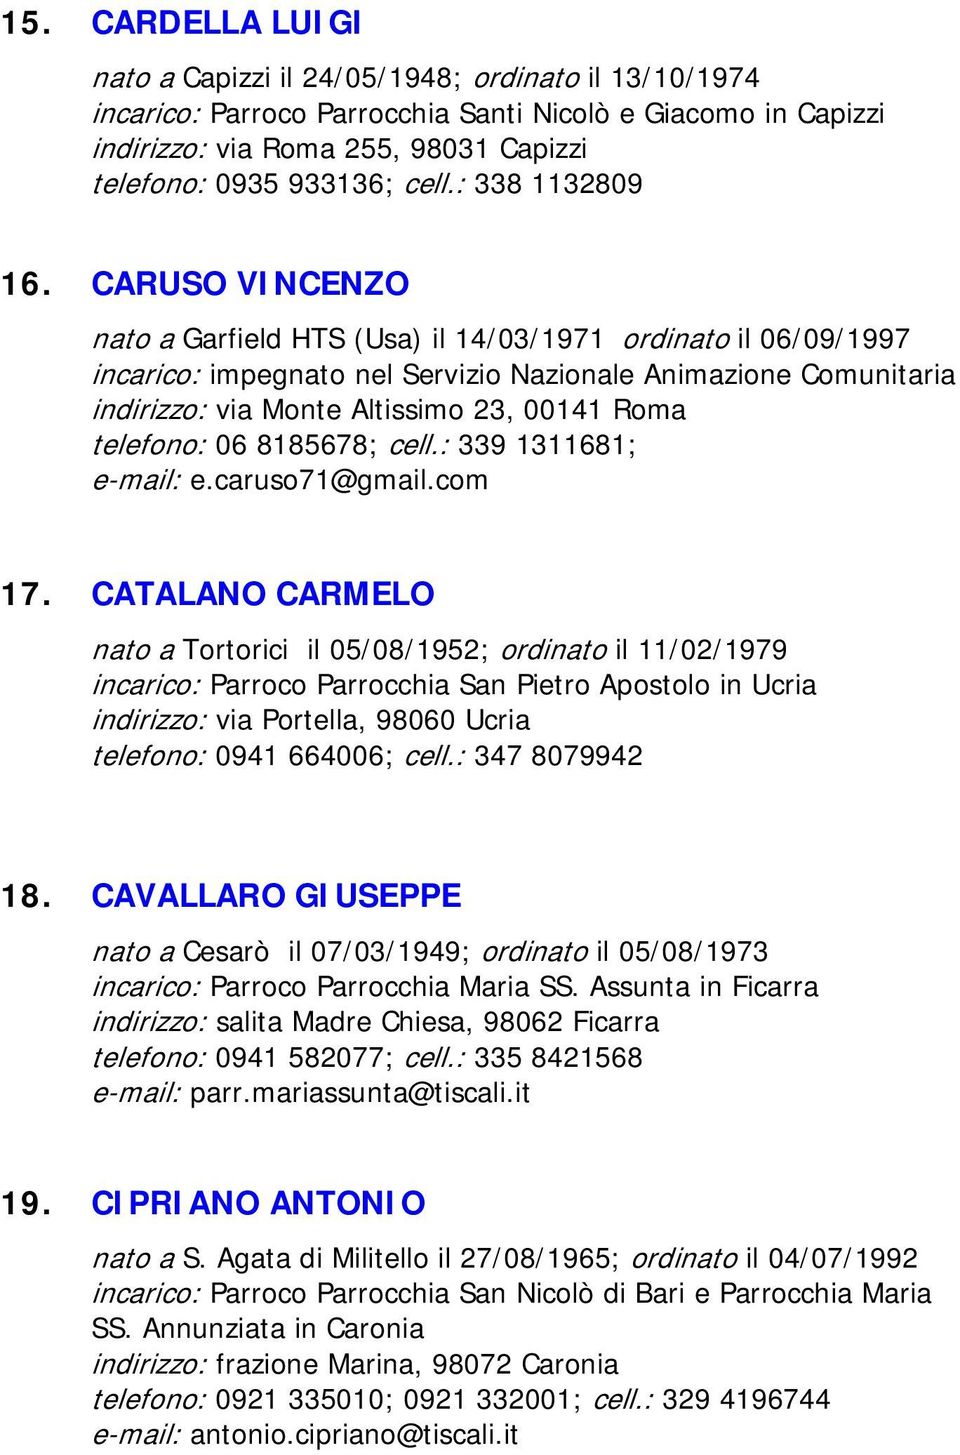 CARUSO VINCENZO nato a Garfield HTS (Usa) il 14/03/1971 ordinato il 06/09/1997 incarico: impegnato nel Servizio Nazionale Animazione Comunitaria indirizzo: via Monte Altissimo 23, 00141 Roma